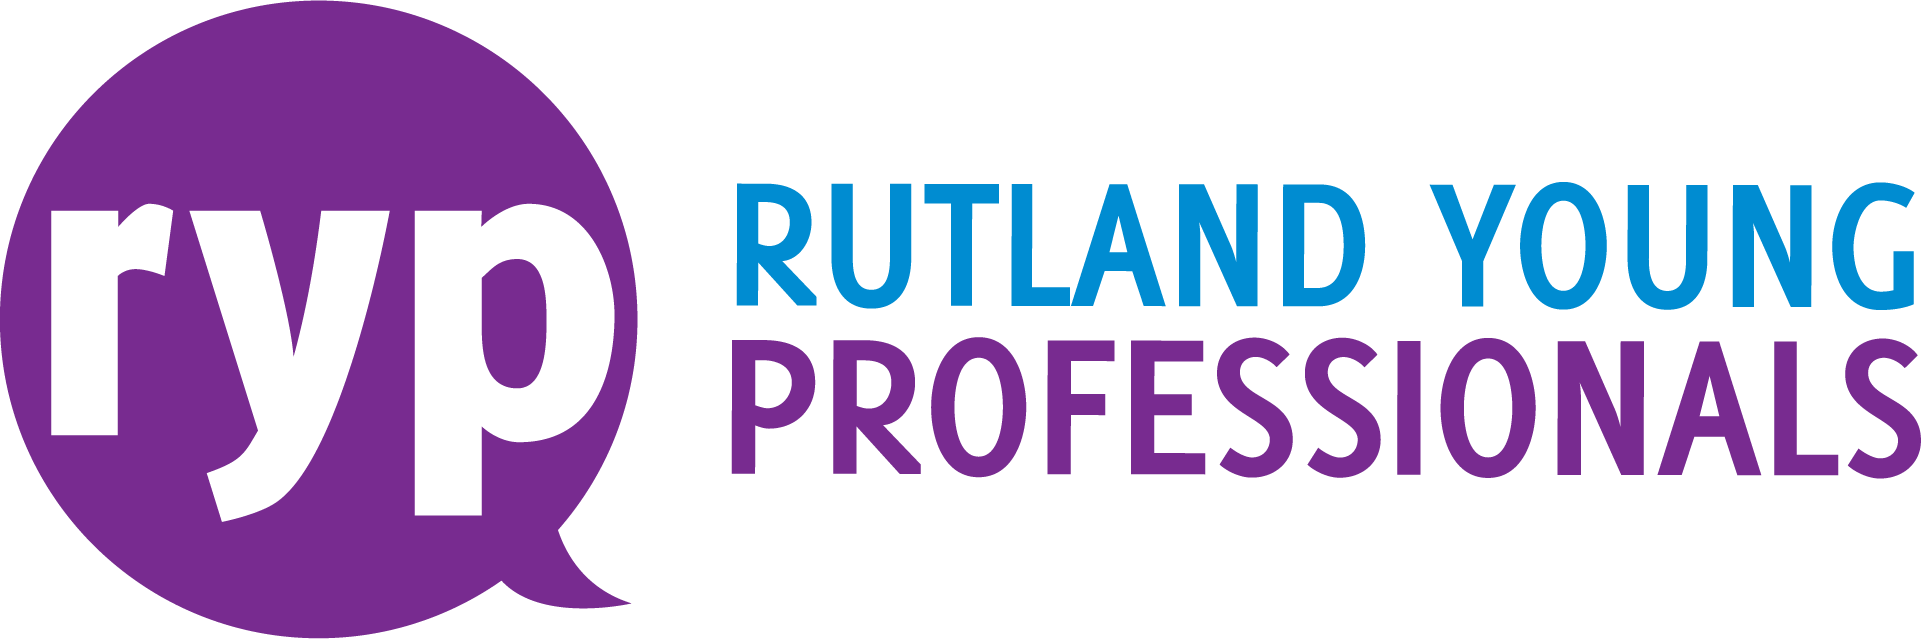 Rutland Young Professionals